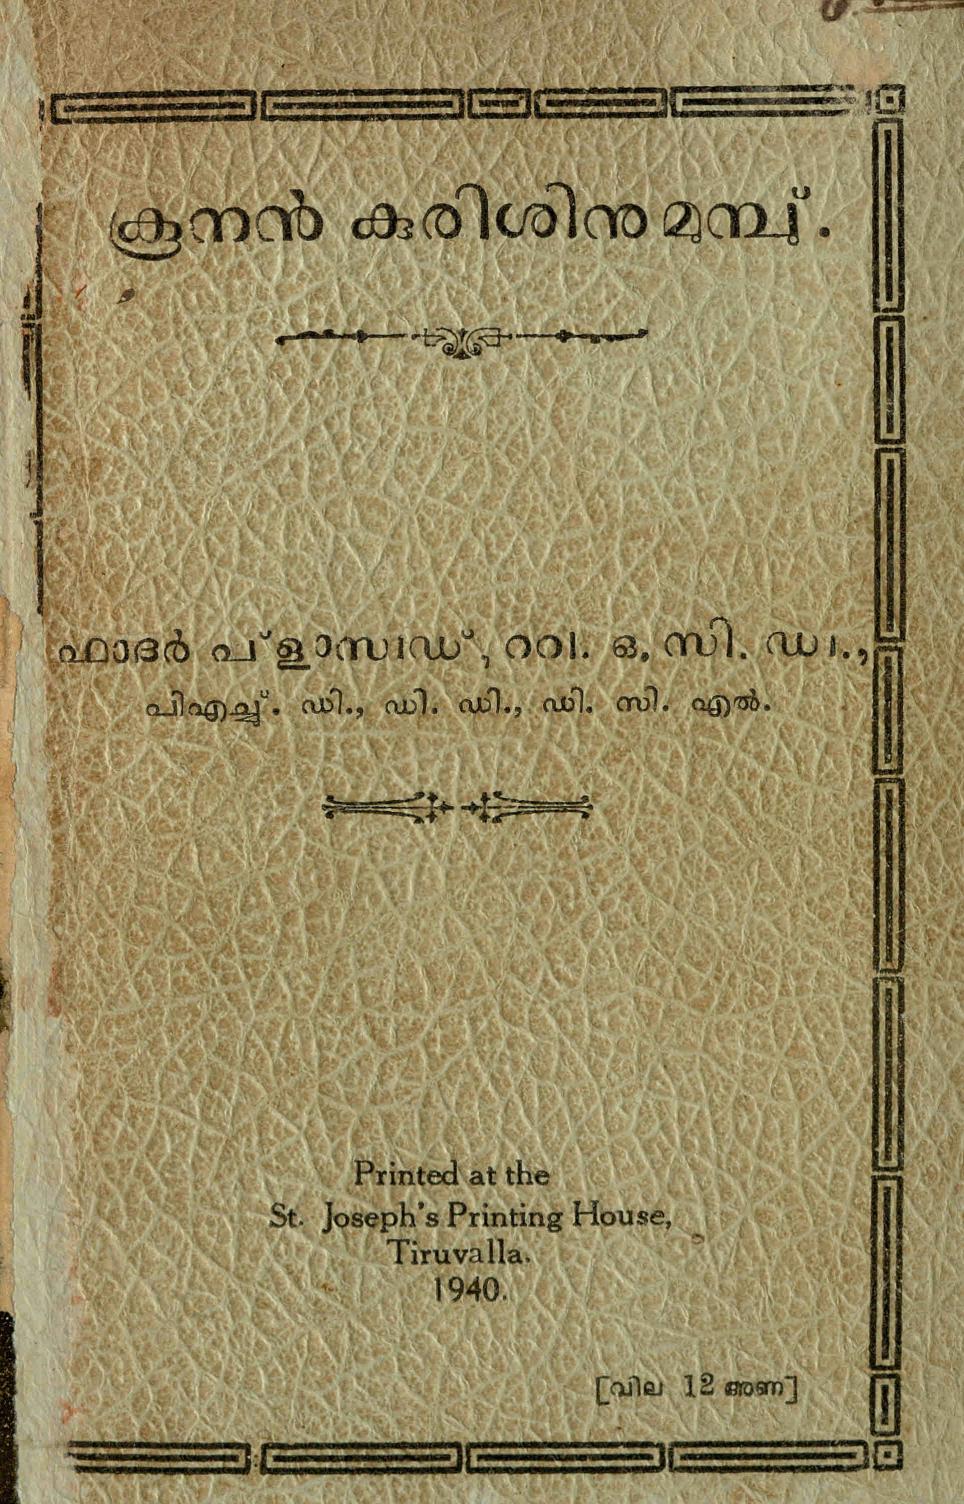 1940 - കൂനൻ കുരിശിനുമുമ്പു് - ഫാദർ പ്ലാസിഡ്